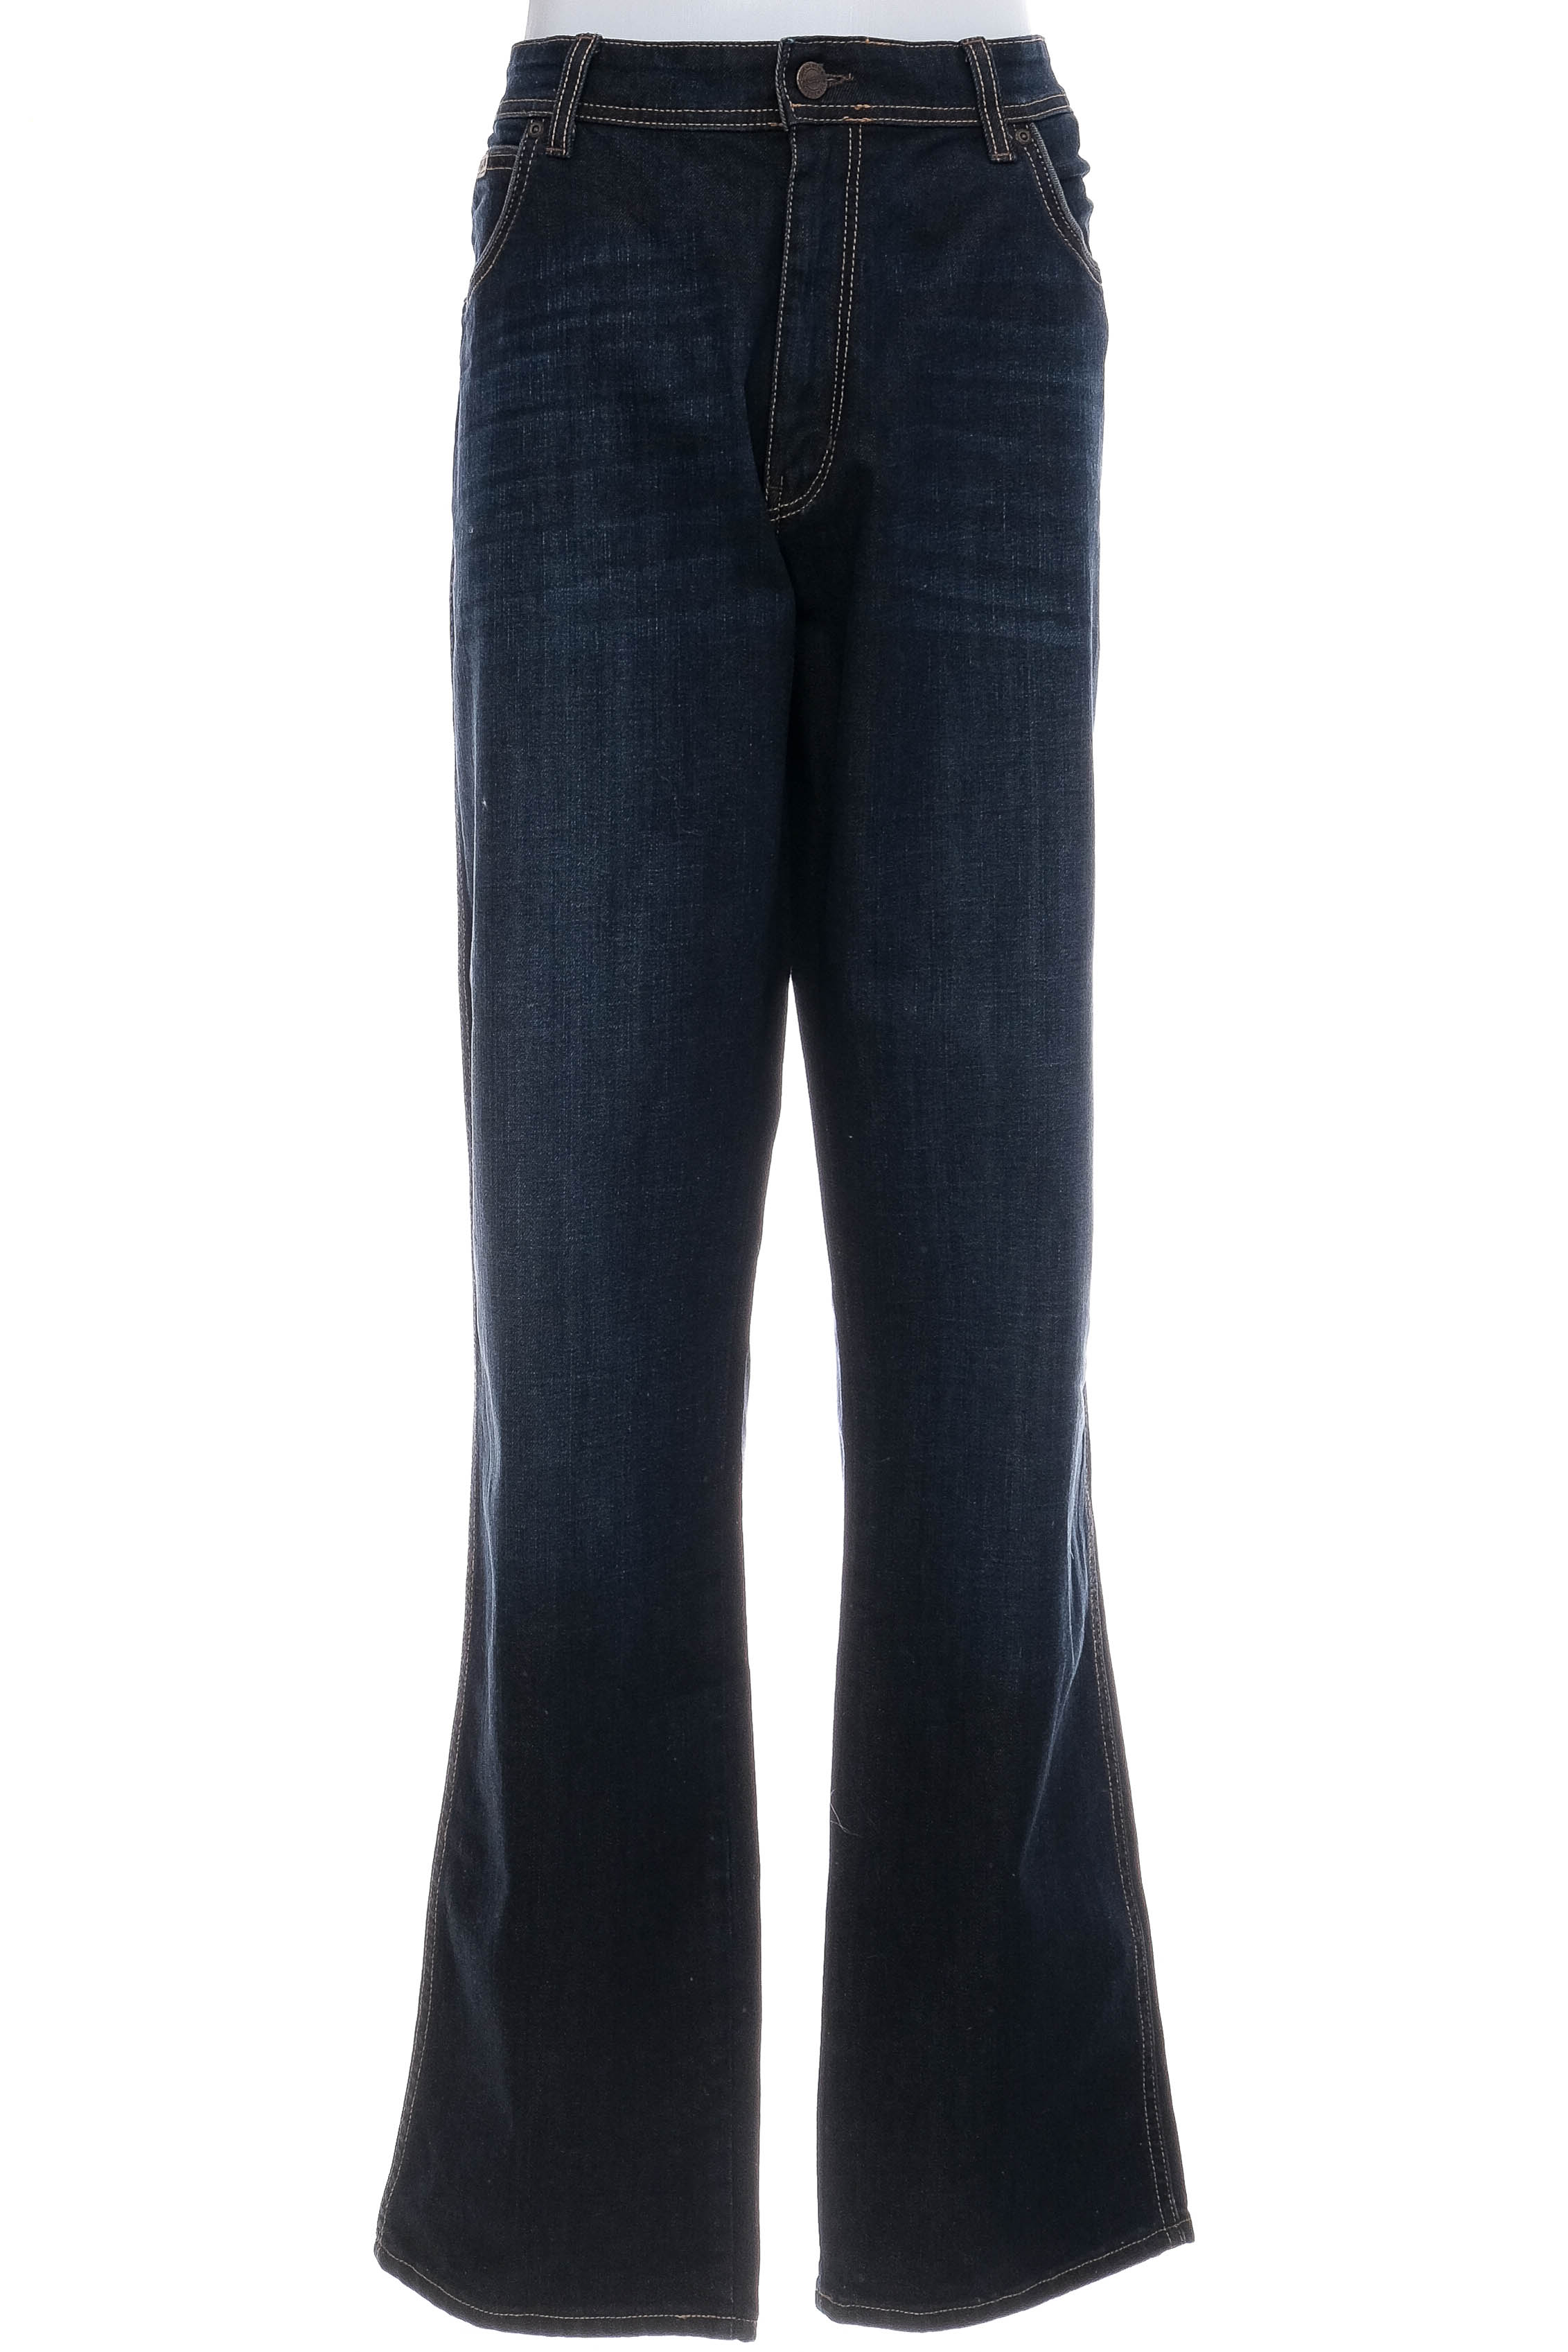 Men's jeans - Wrangler - 0